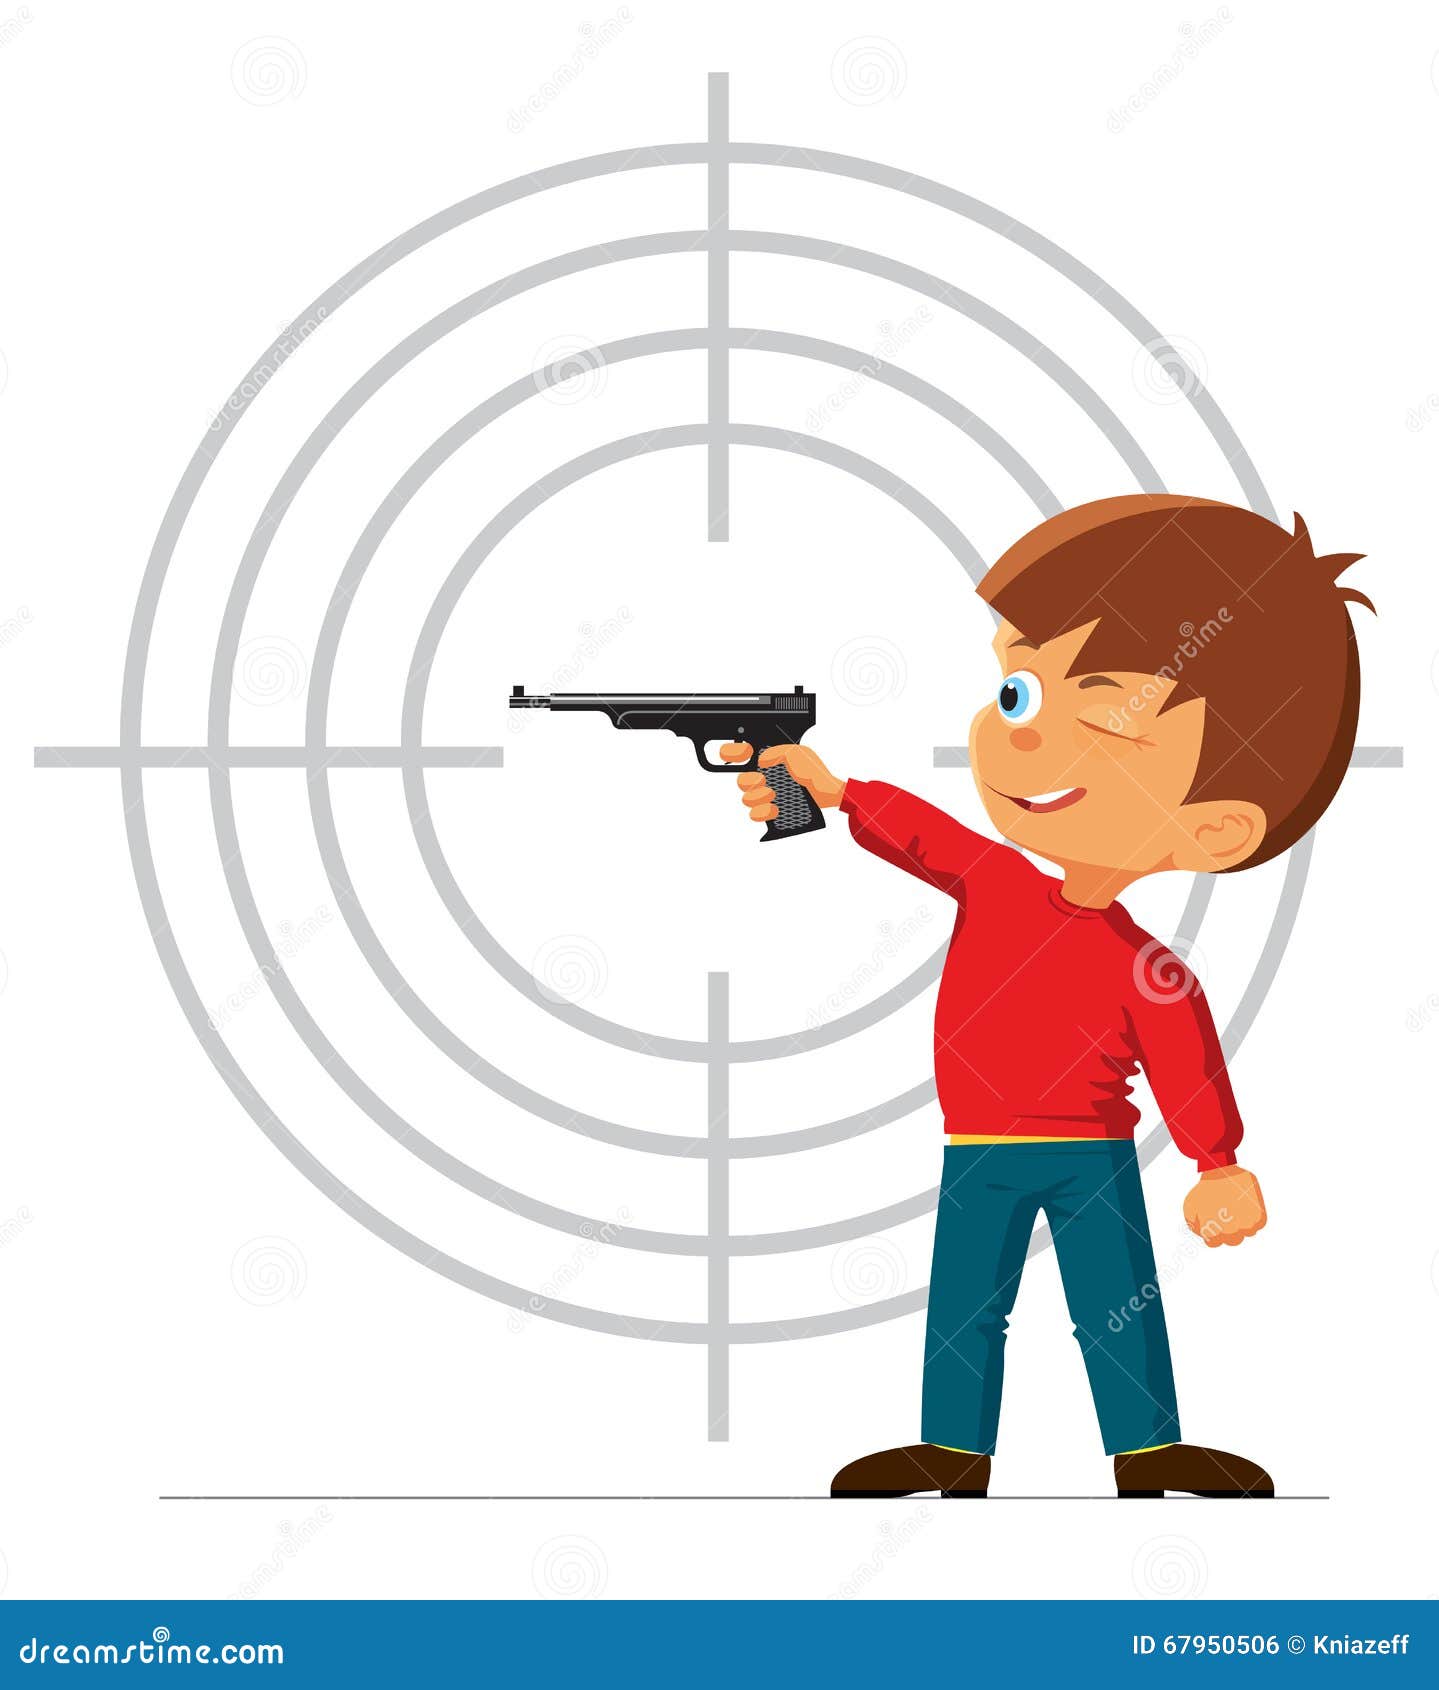 Включи стрелок. Мальчик стреляет из пистолета. Юный стрелок. Стрельба на прозрачном фоне. Тир иллюстрация.